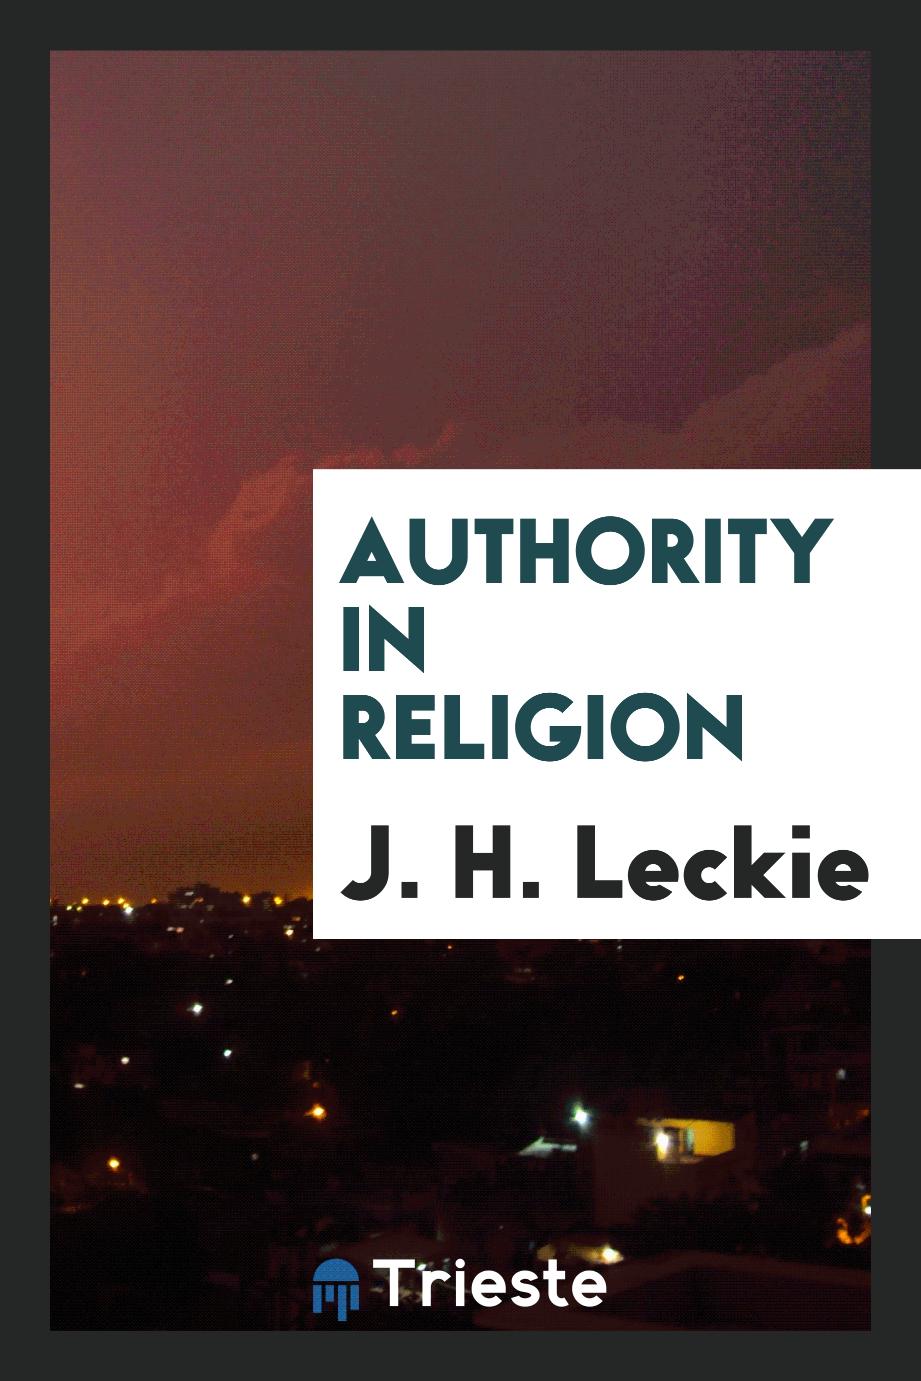 Authority in religion